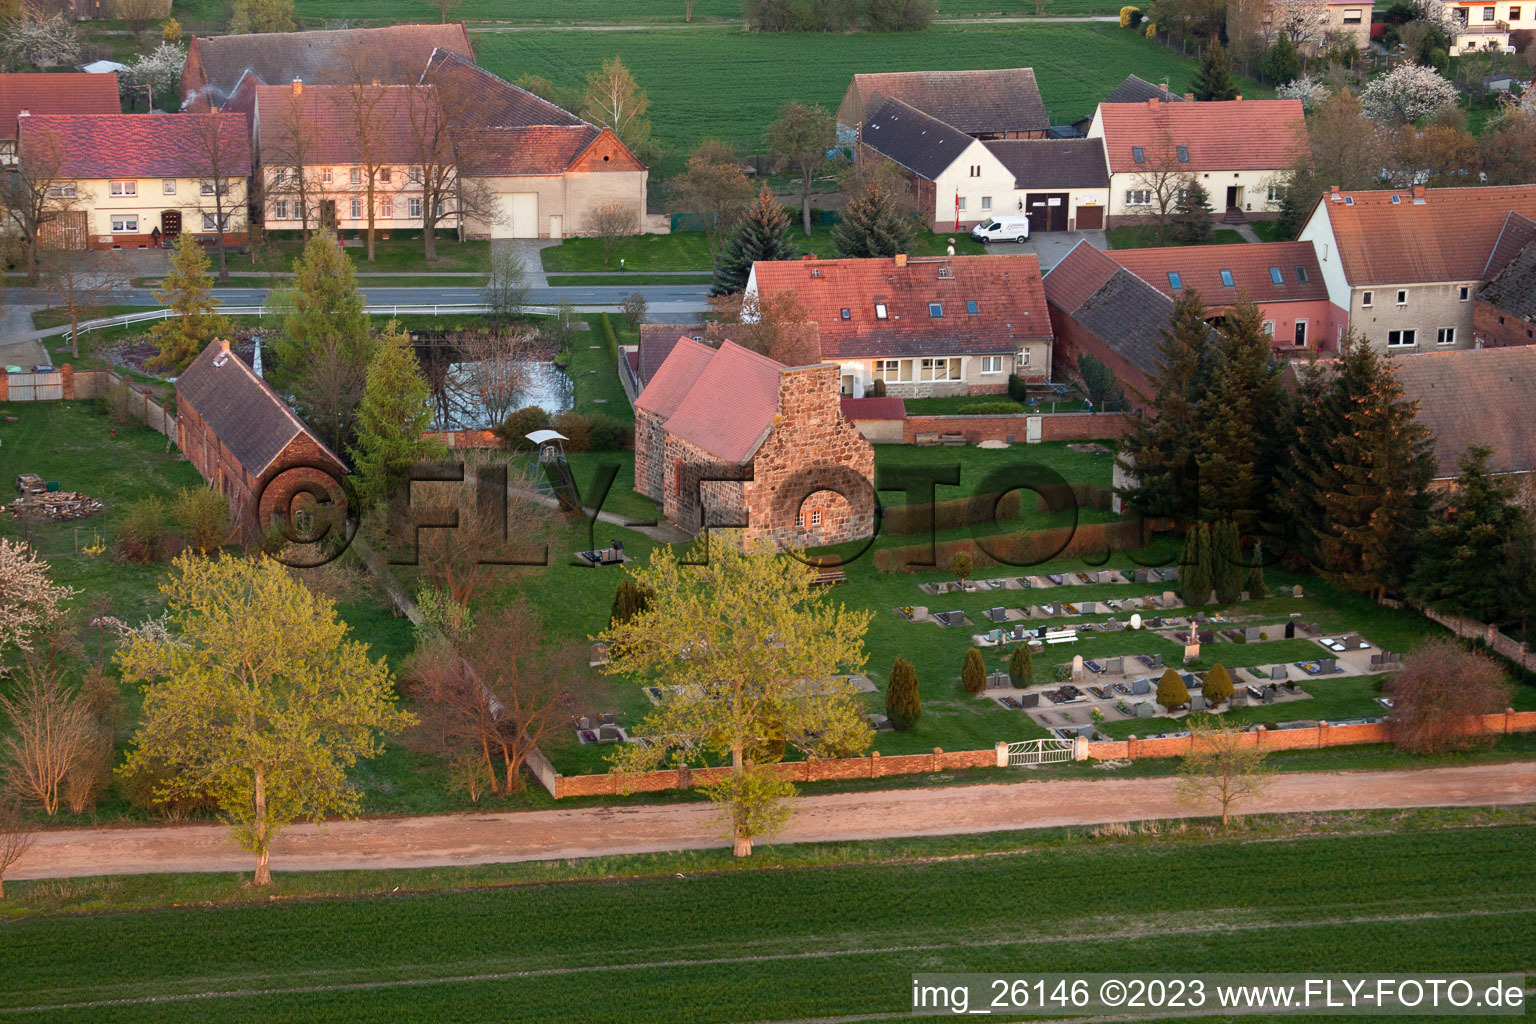 Bâtiment d'église au centre du village à Niederer Fläming dans le département Brandebourg, Allemagne d'en haut